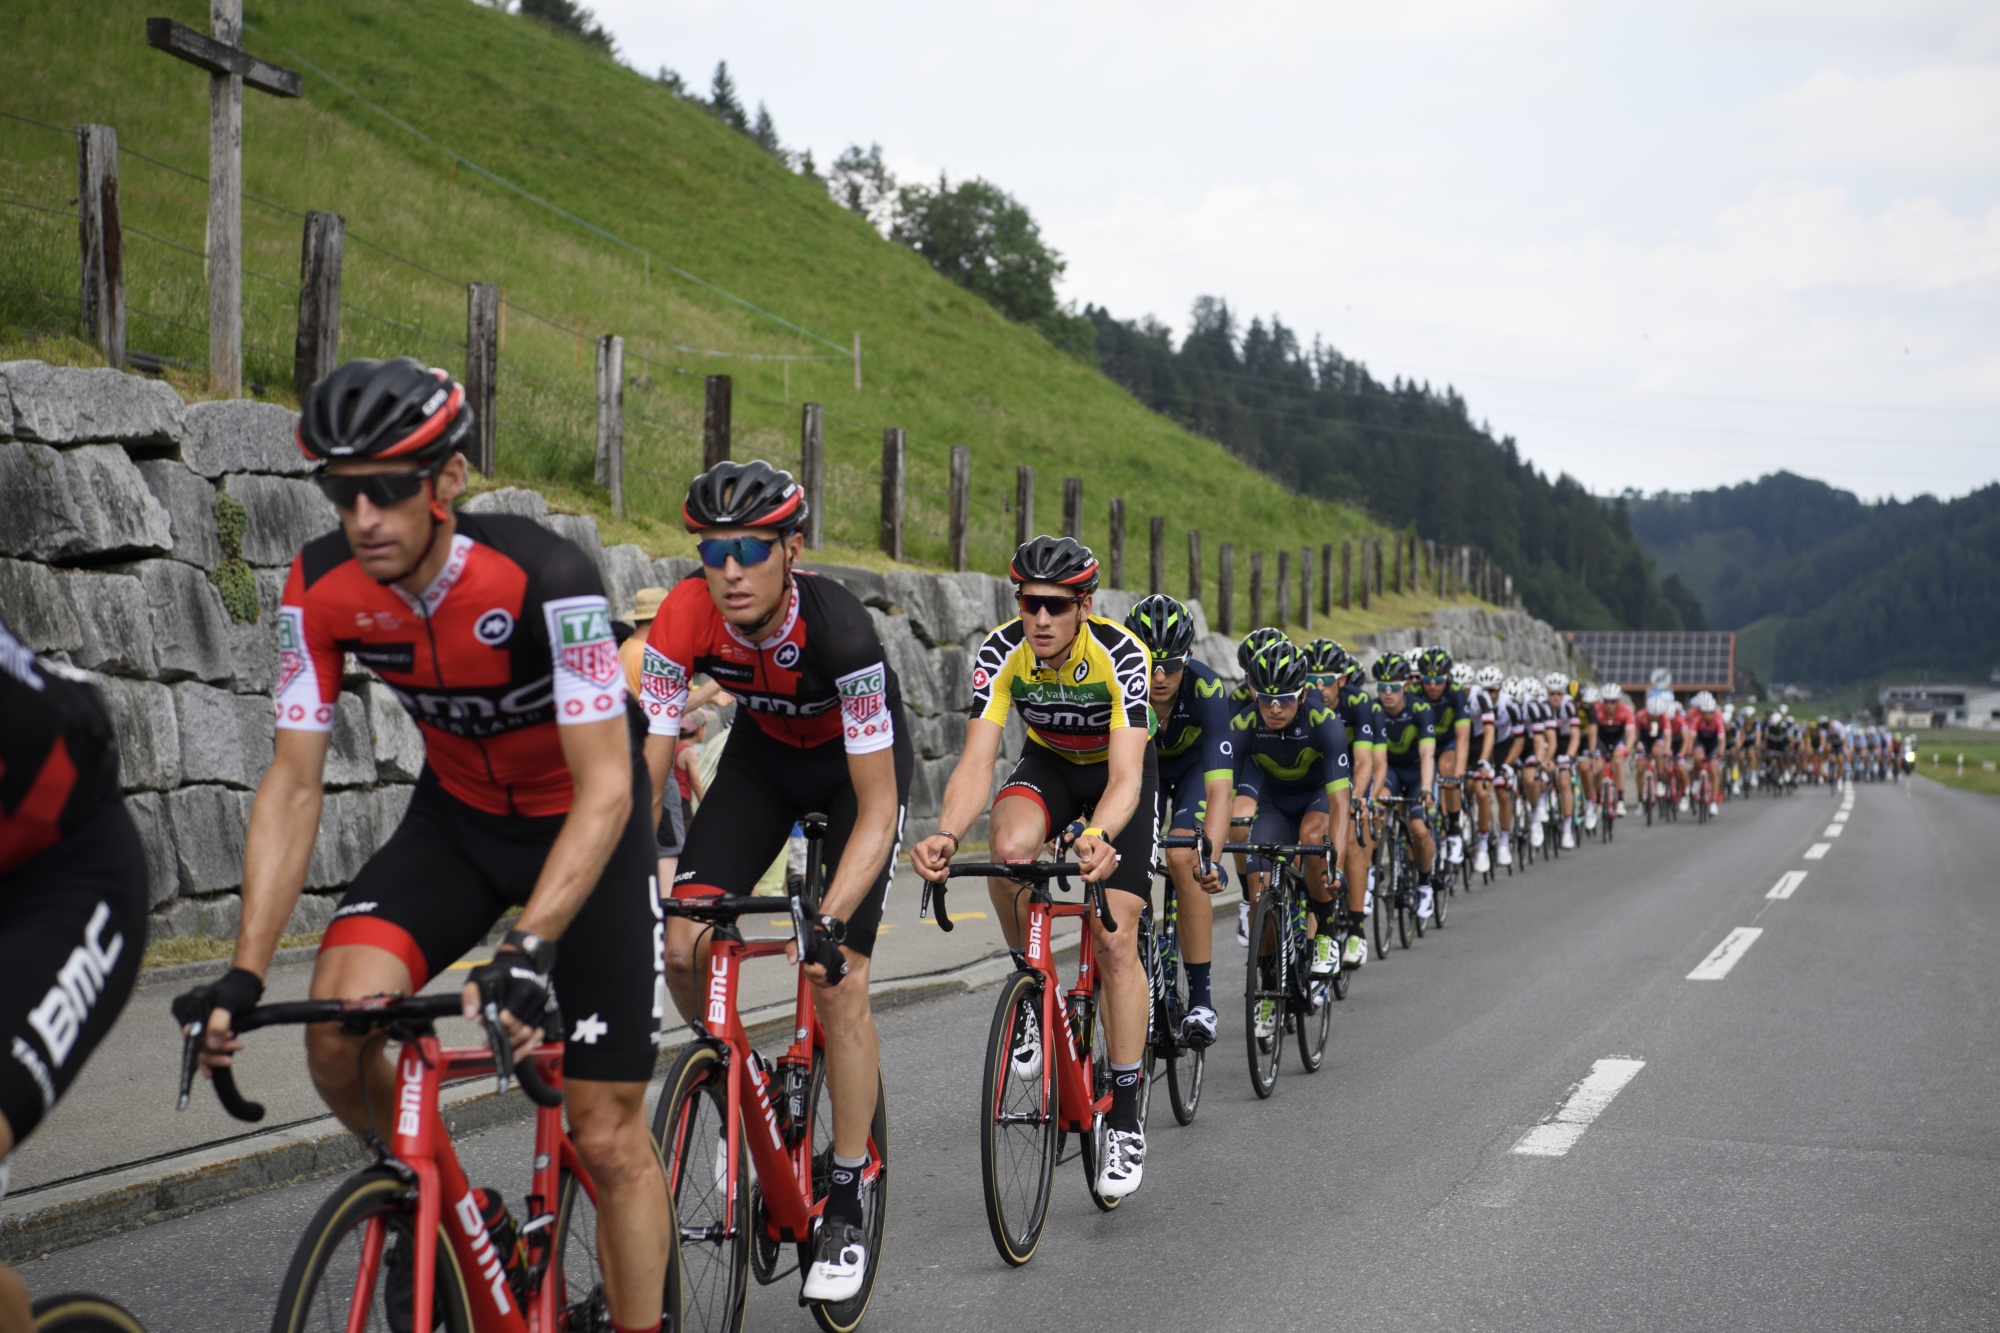 Les cyclistes du Tour de Suisse lors de la 3e étape, qui menait de Menziken à Berne. Ils traverseront le Valais mercredi.